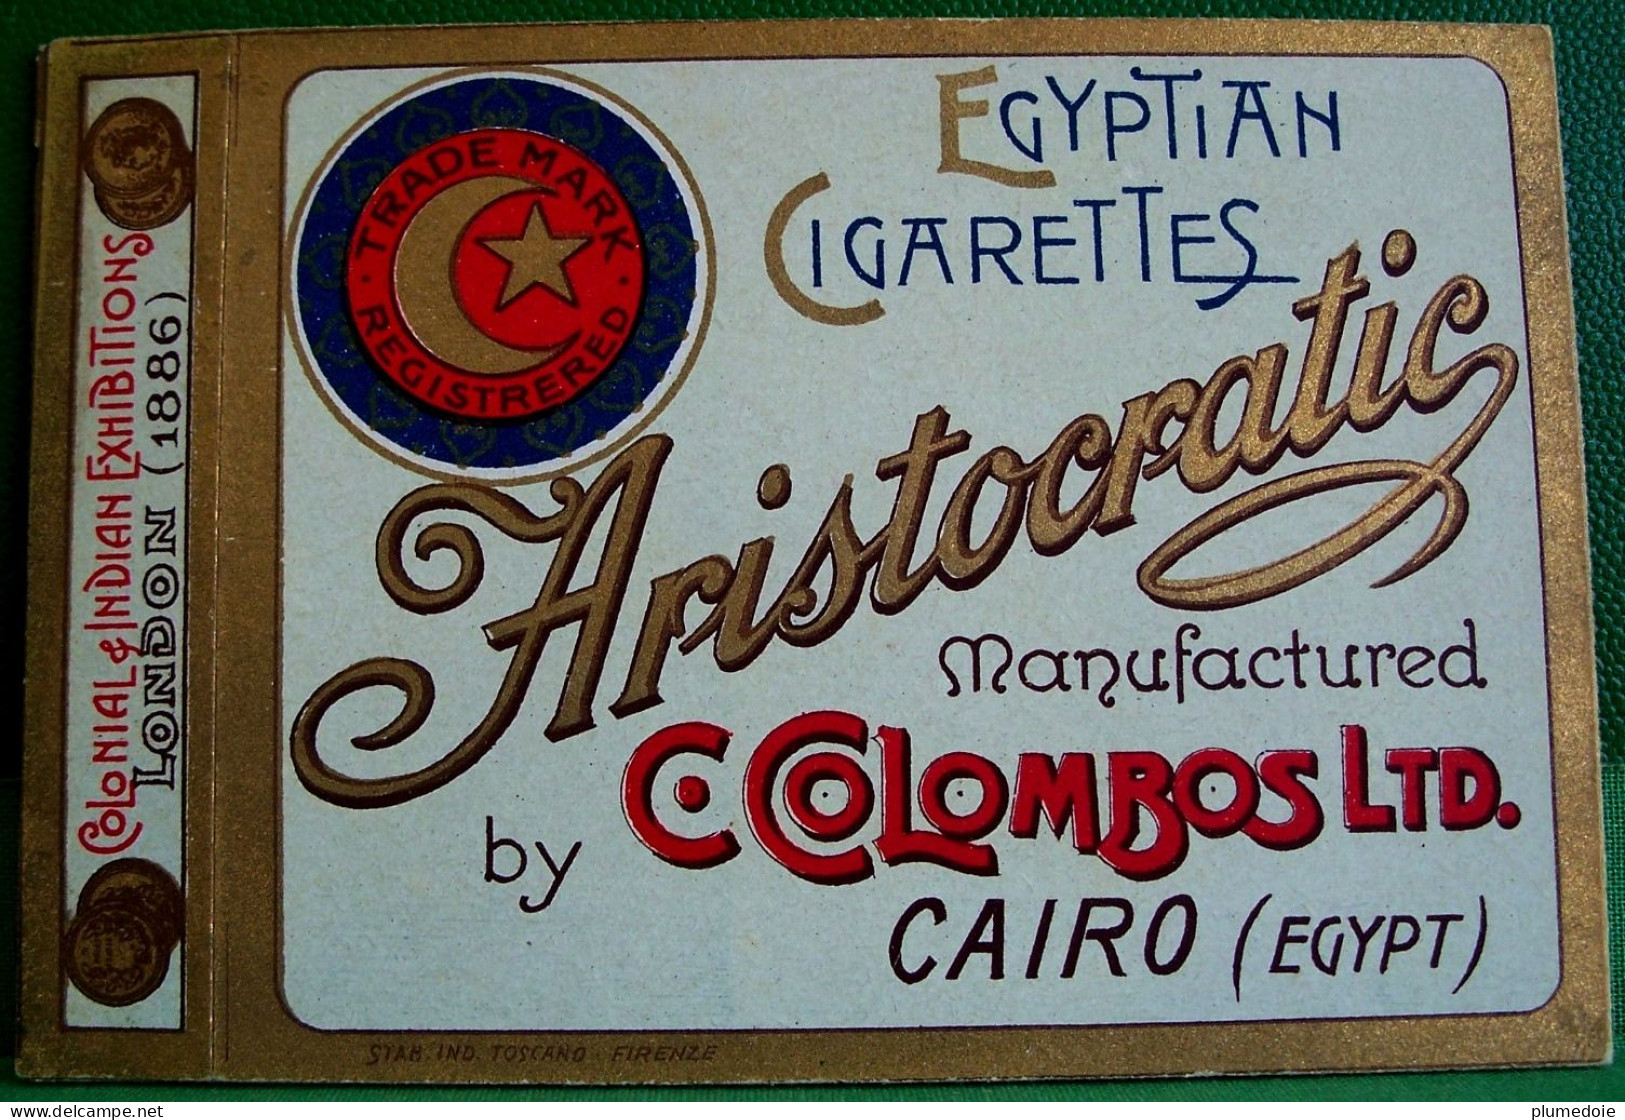 ETUI Couverture  De PAQUET De CIGARETTES VIDE  ARISTOCRATIC  , Ca 1920 , COVER OF OLD EMPTY BOX , C.COLOMBOS Ltd - Empty Cigarettes Boxes